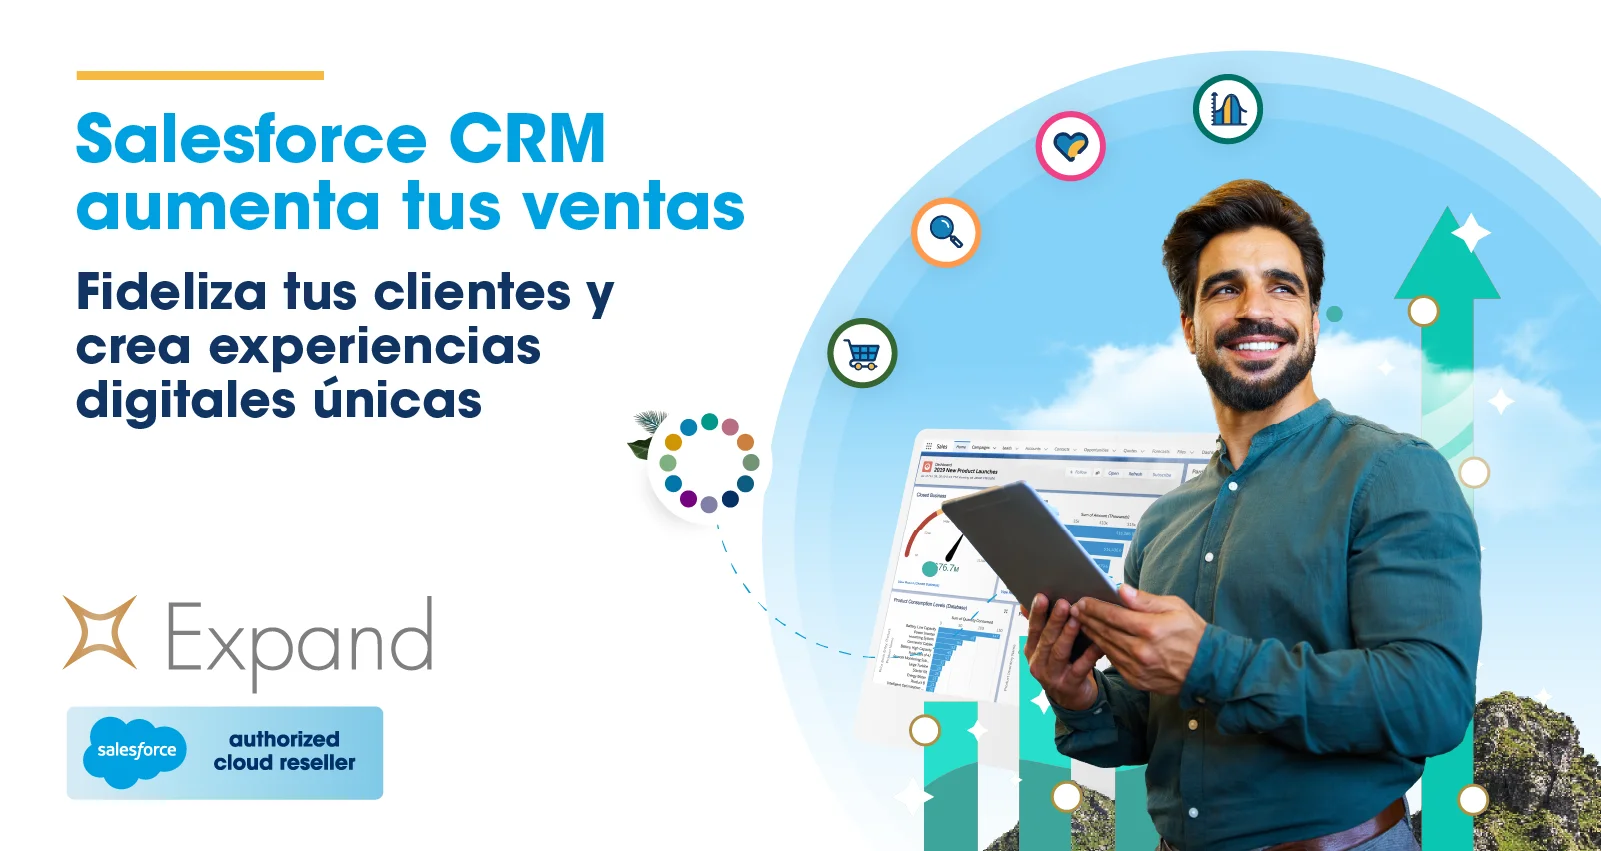 ¿Qué es Salesforce CRM?. La plataforma que le permite aumentar las ventas, fidelidad clientes, y crear experiencias digitales únicas.